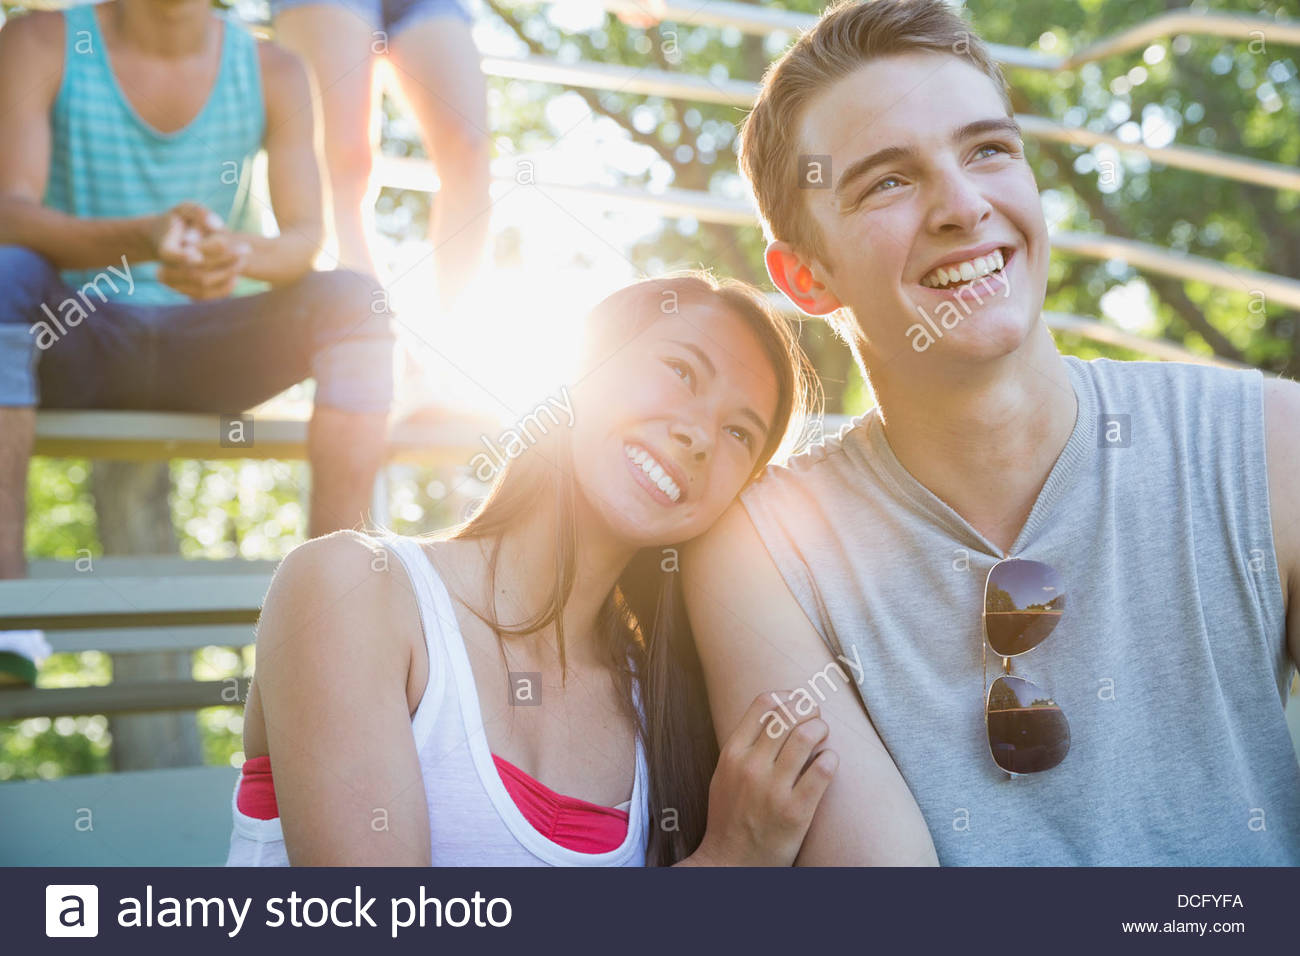 Teen couple sitting on park bleachers Stock Photo